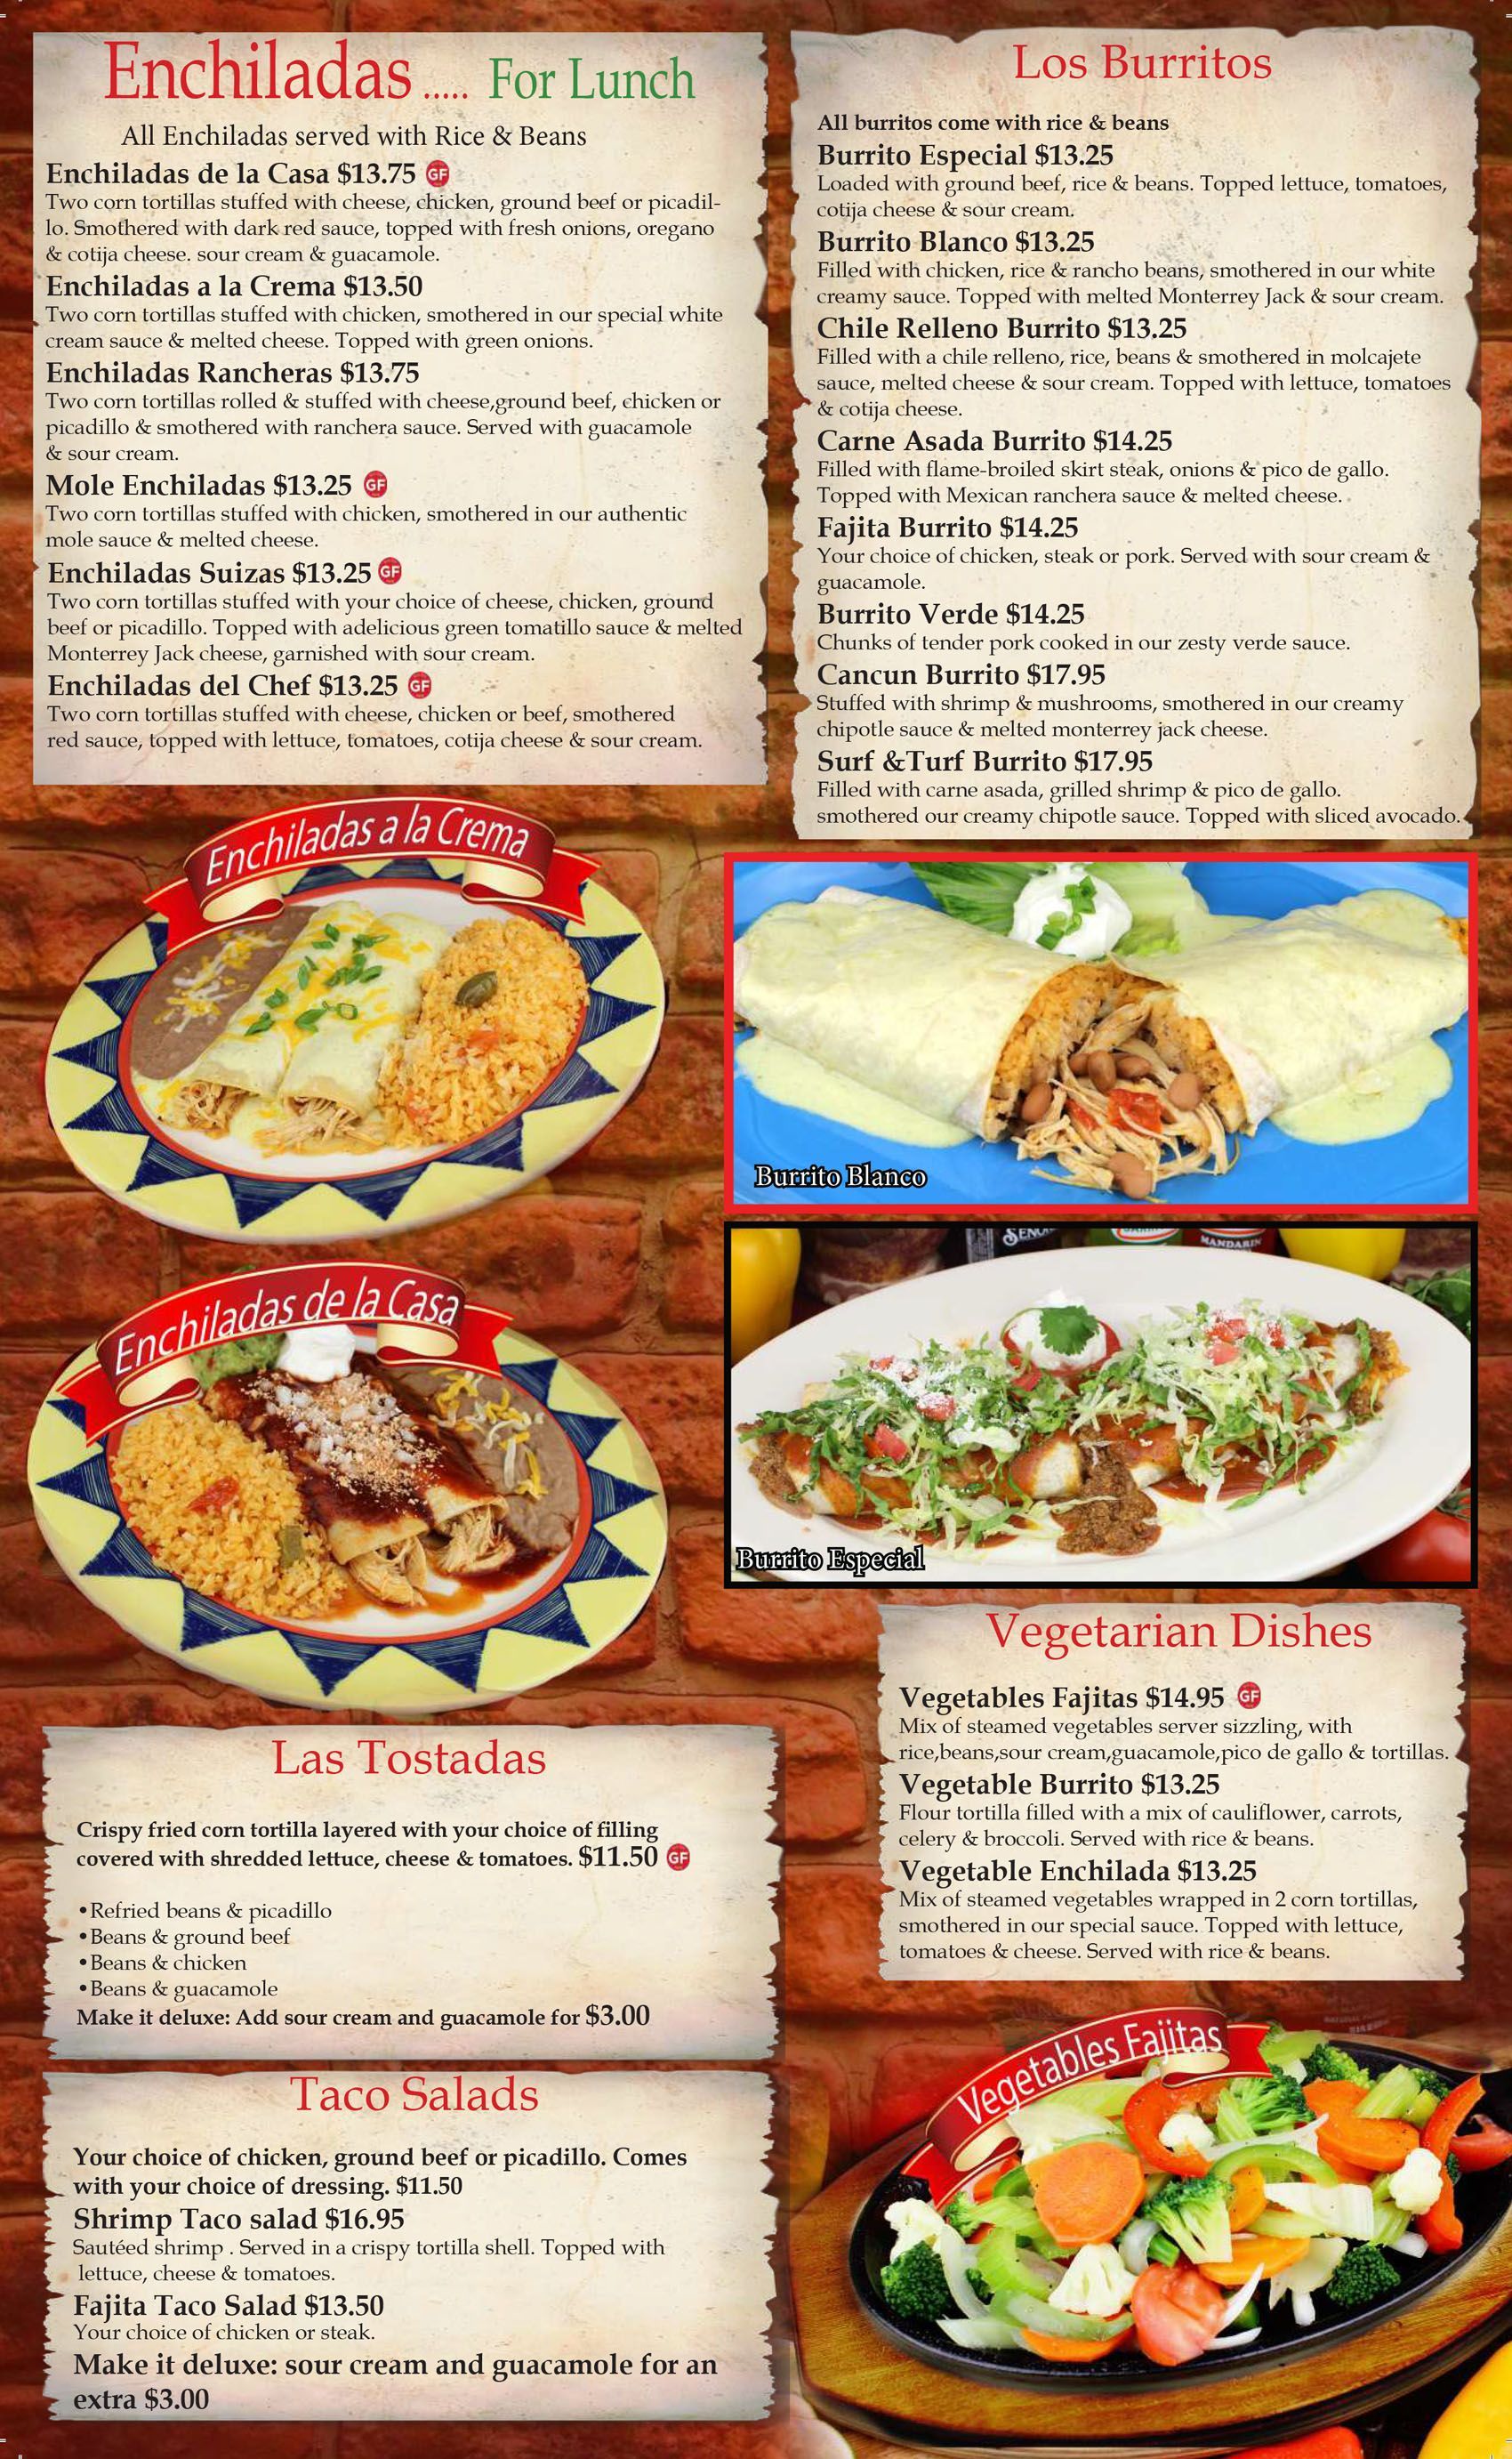 Washington Enchiladas, Burritos, Tostadas, Vegetarian, and Taco Salads